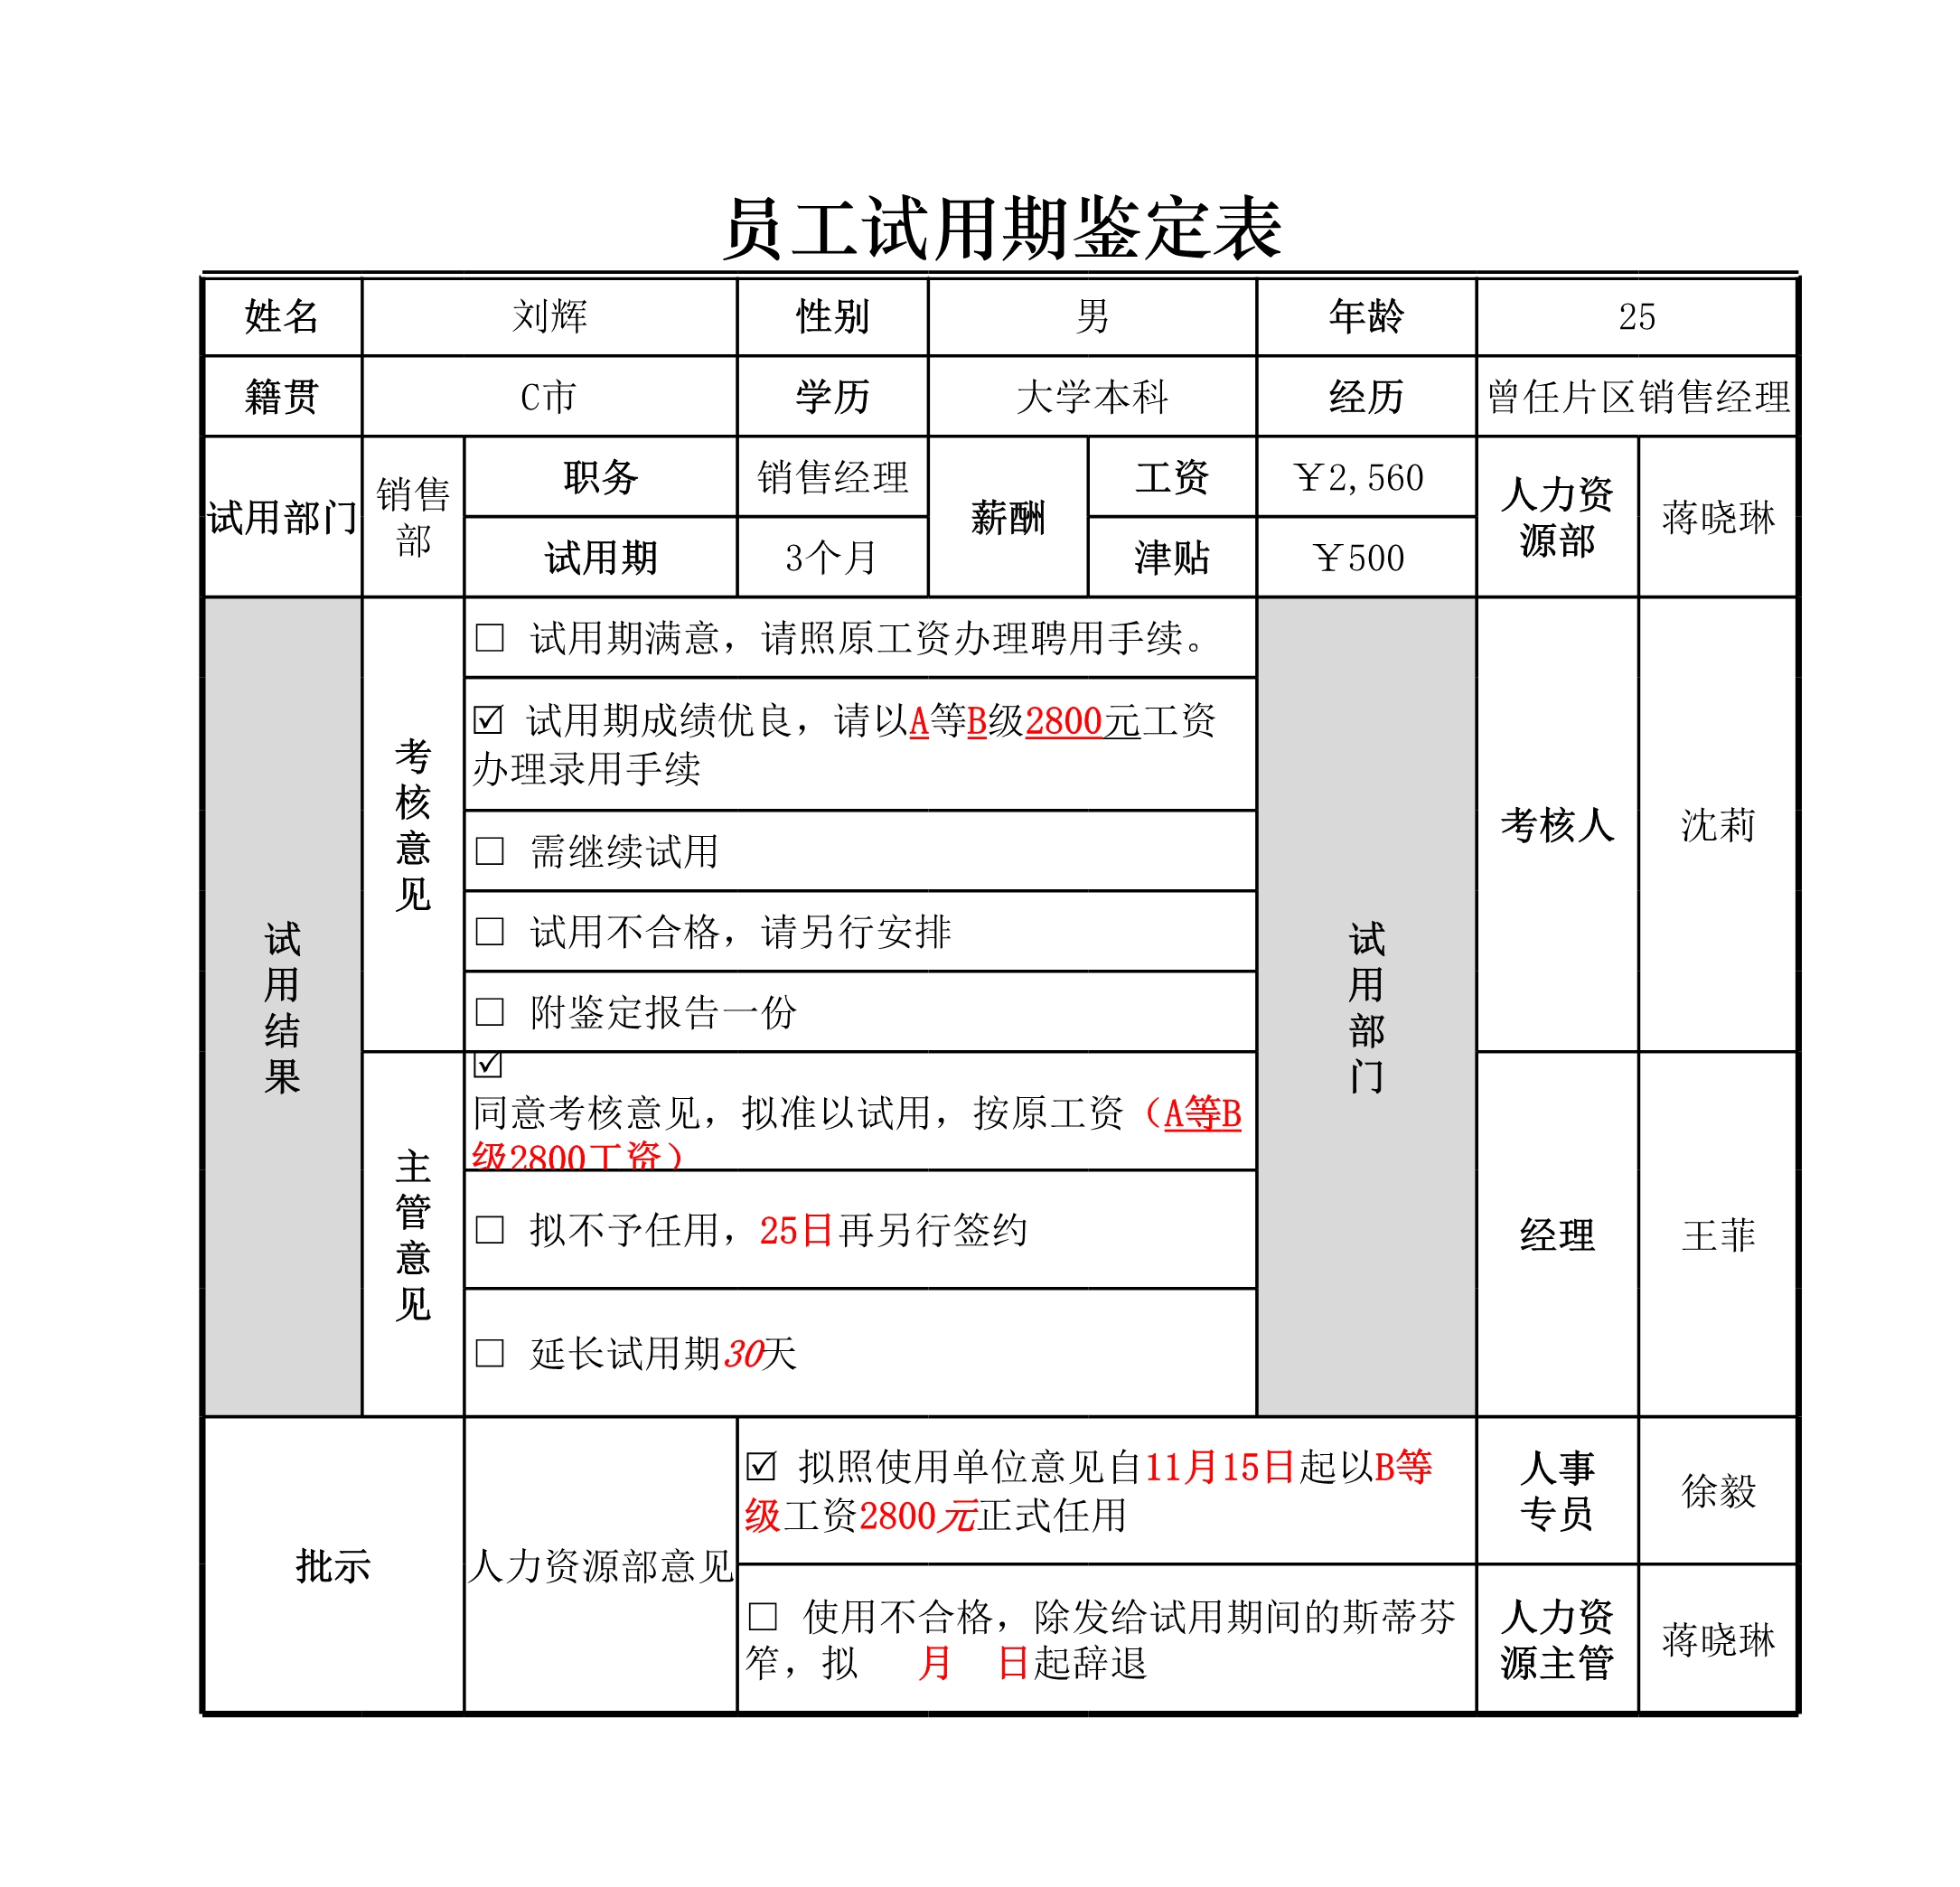 员工转正考核表自我评价格式下载-华军软件园